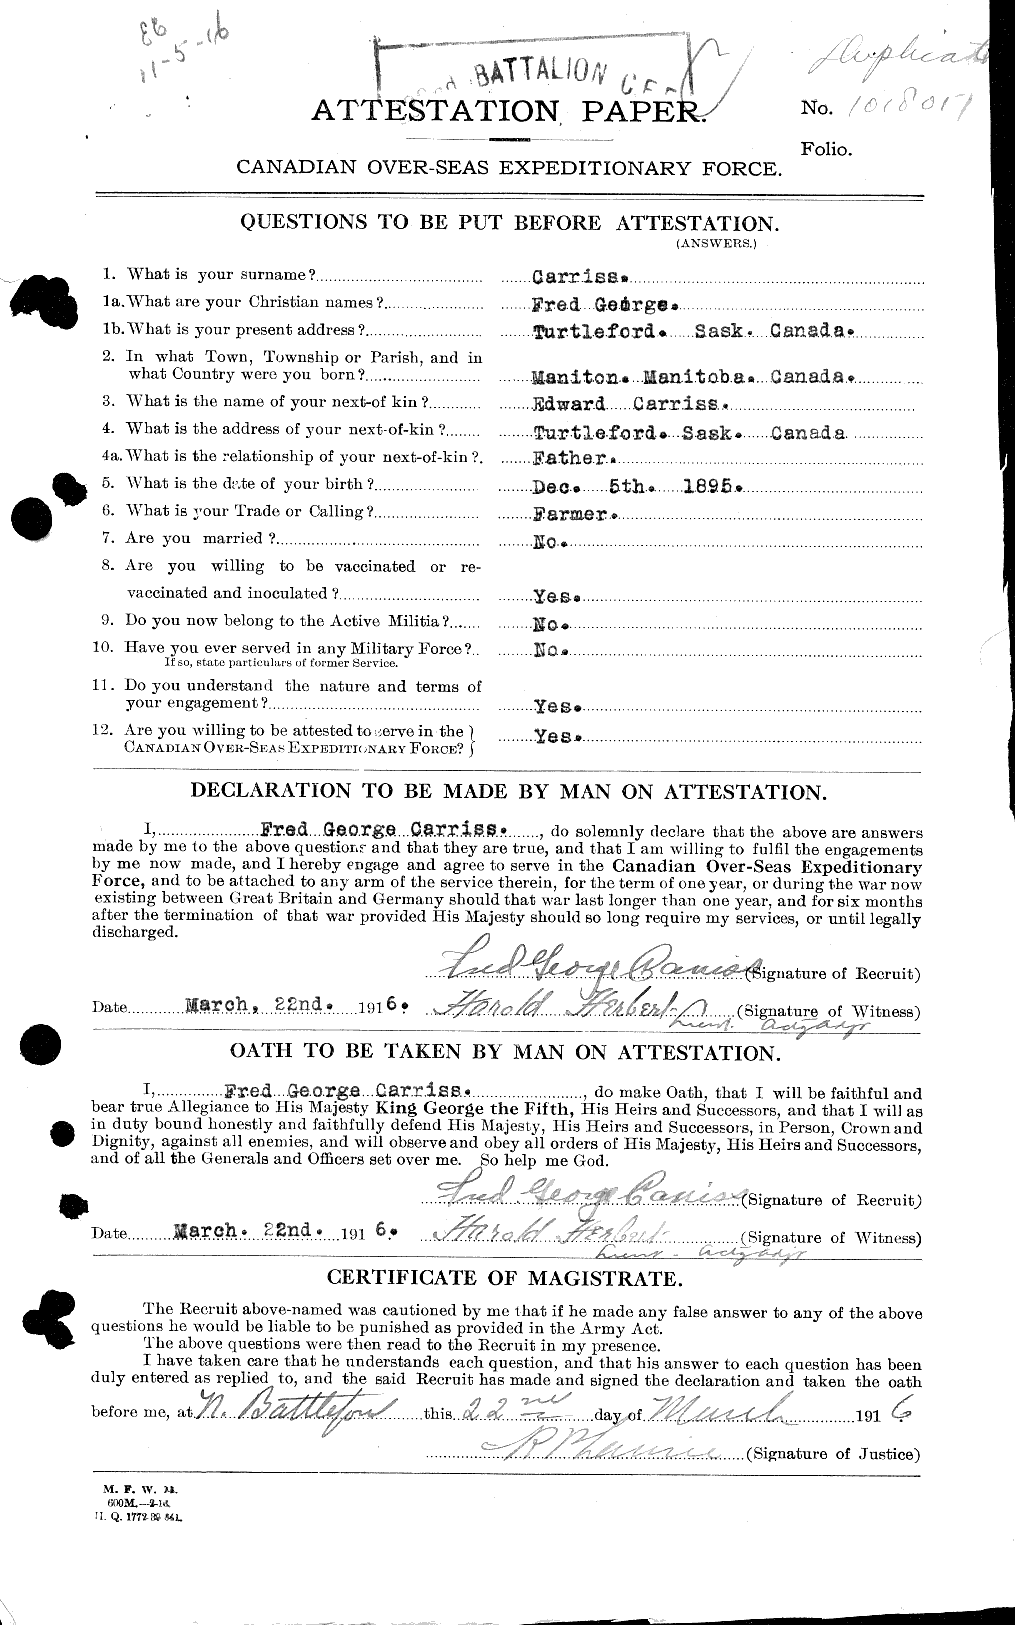 Dossiers du Personnel de la Première Guerre mondiale - CEC 010614a